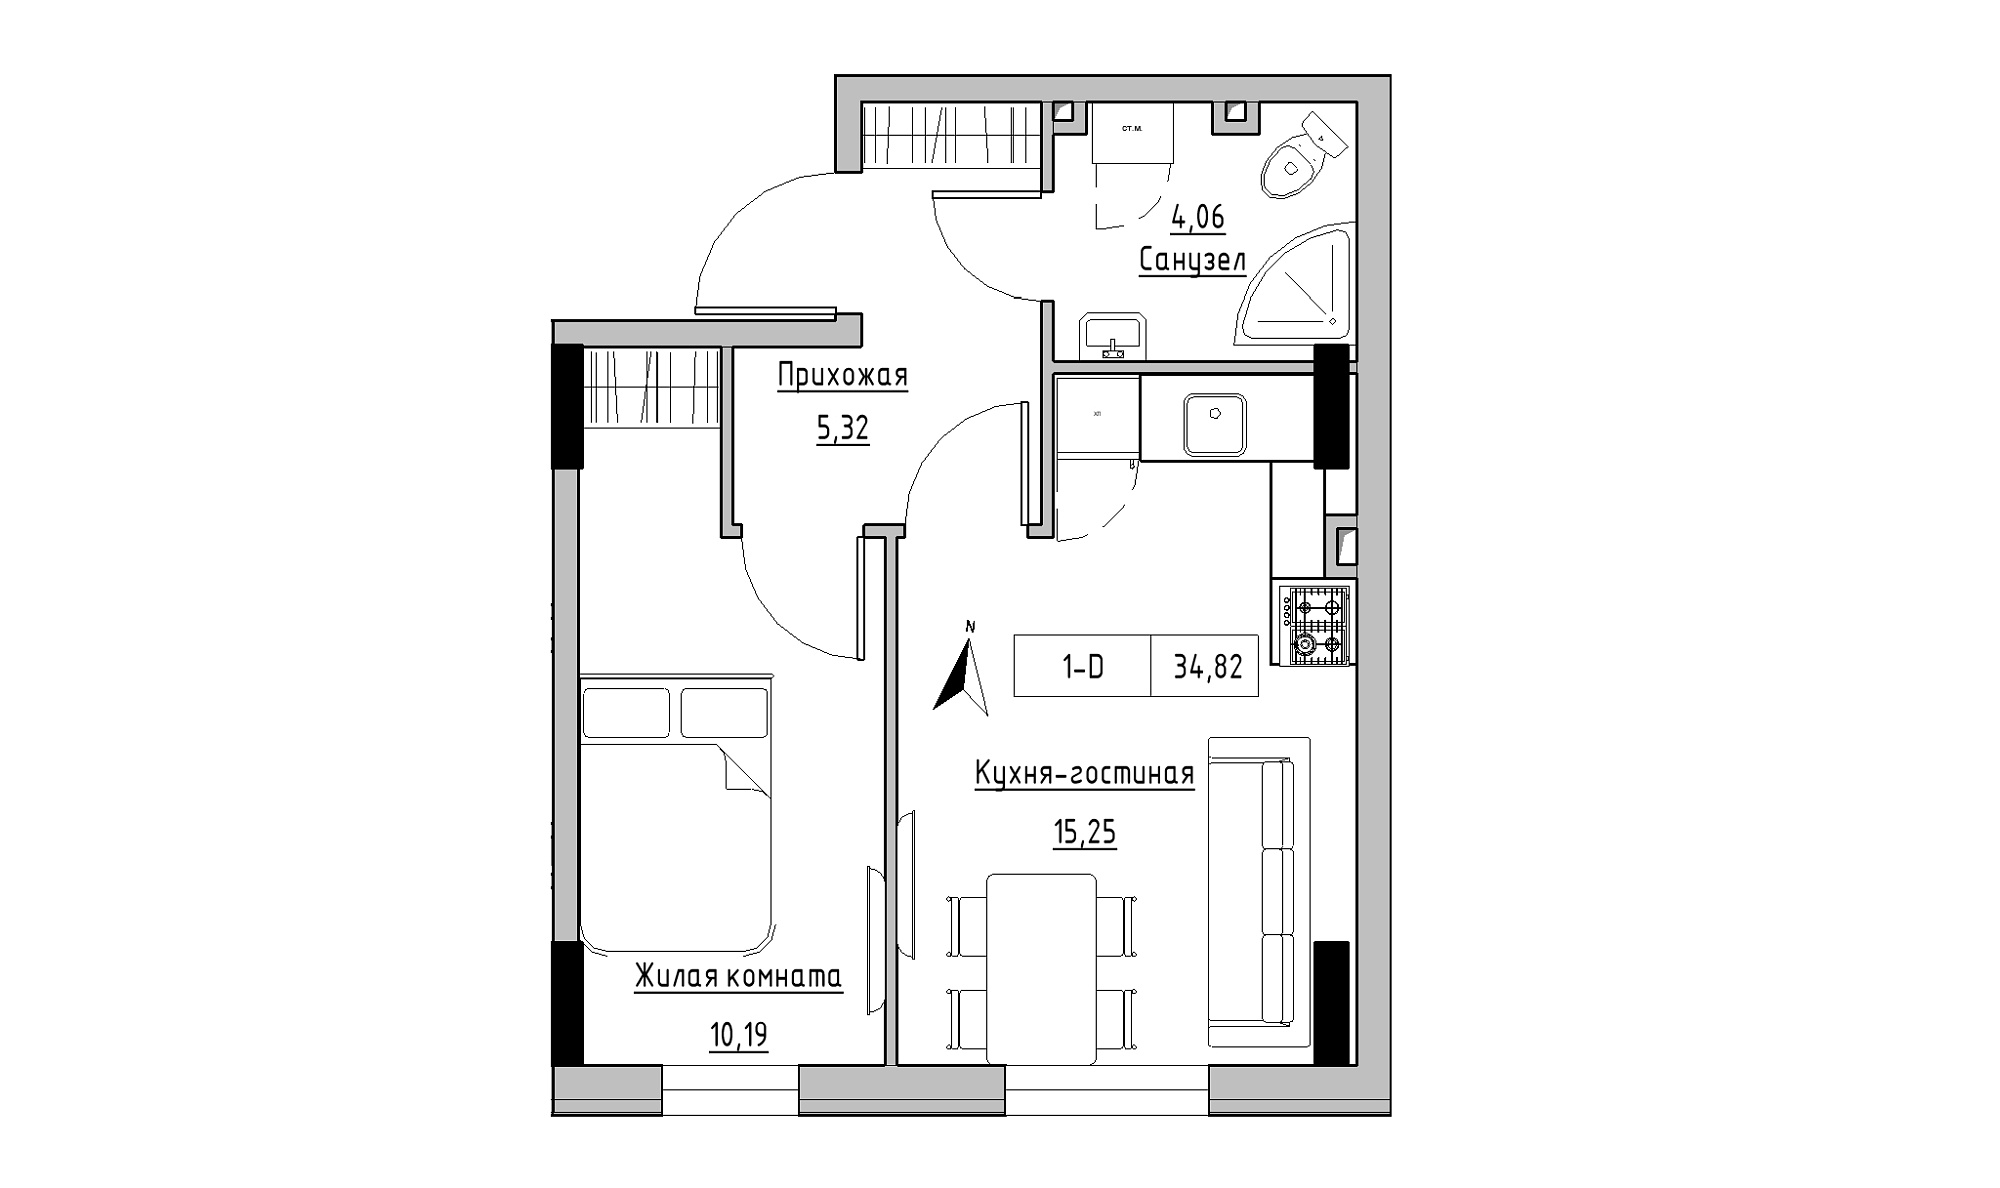 Планировка 1-к квартира площей 34.82м2, KS-025-01/0011.